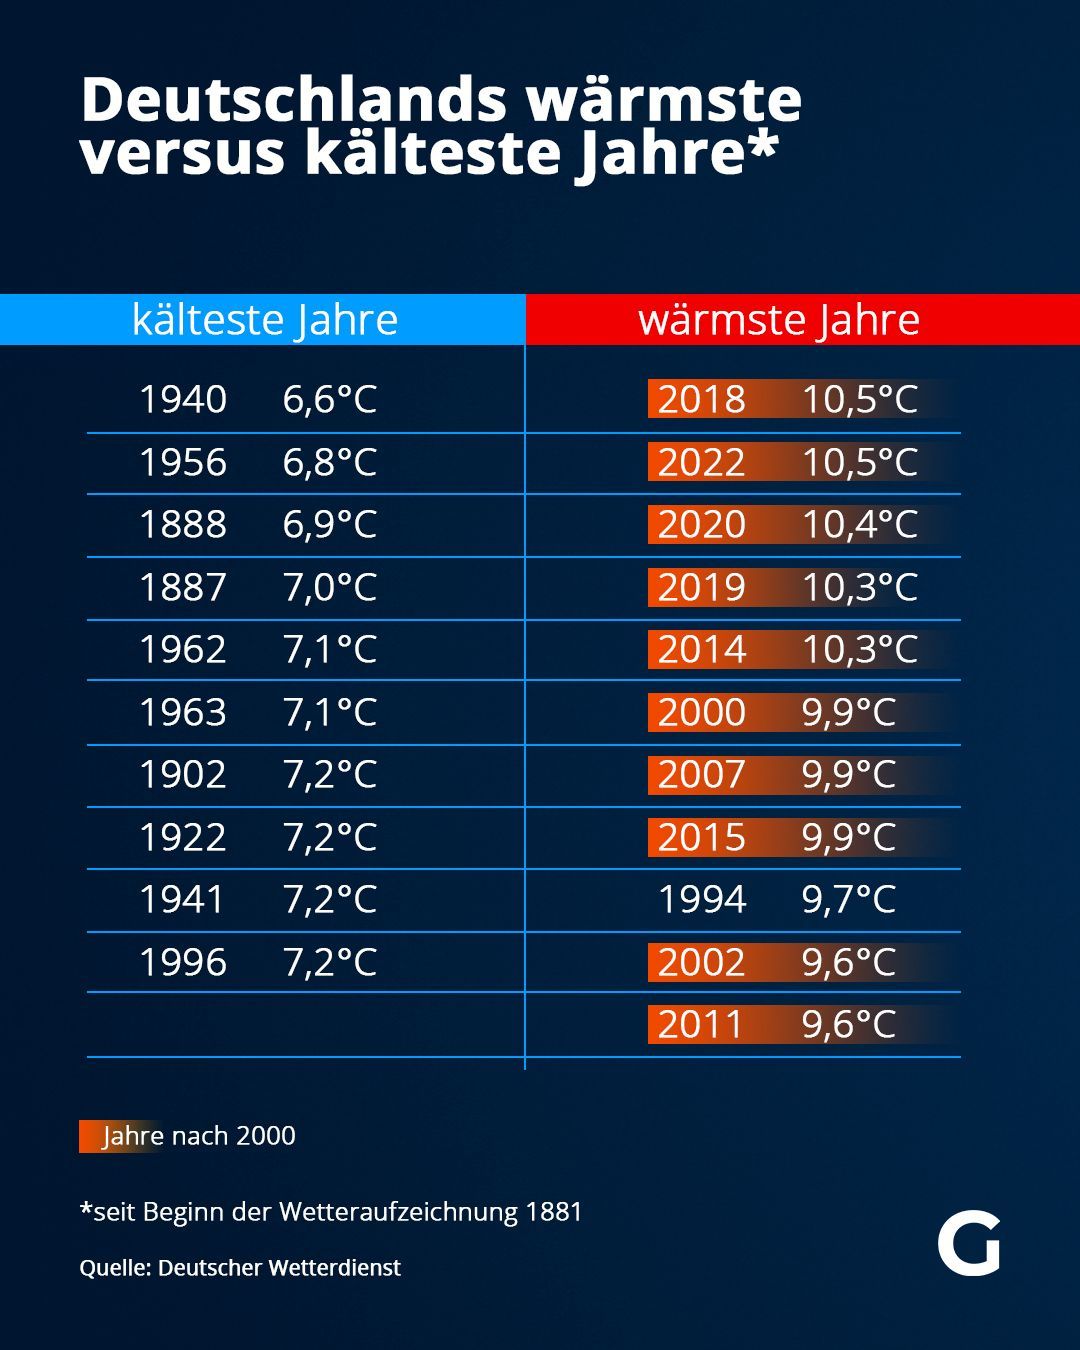 Die Gegenüberstellung zeigt nicht nur die starken Temperatur-Unterschiede, sondern auch die zeitliche Entwicklung: Die Jahre nach 2000 sind rot gefärbt.